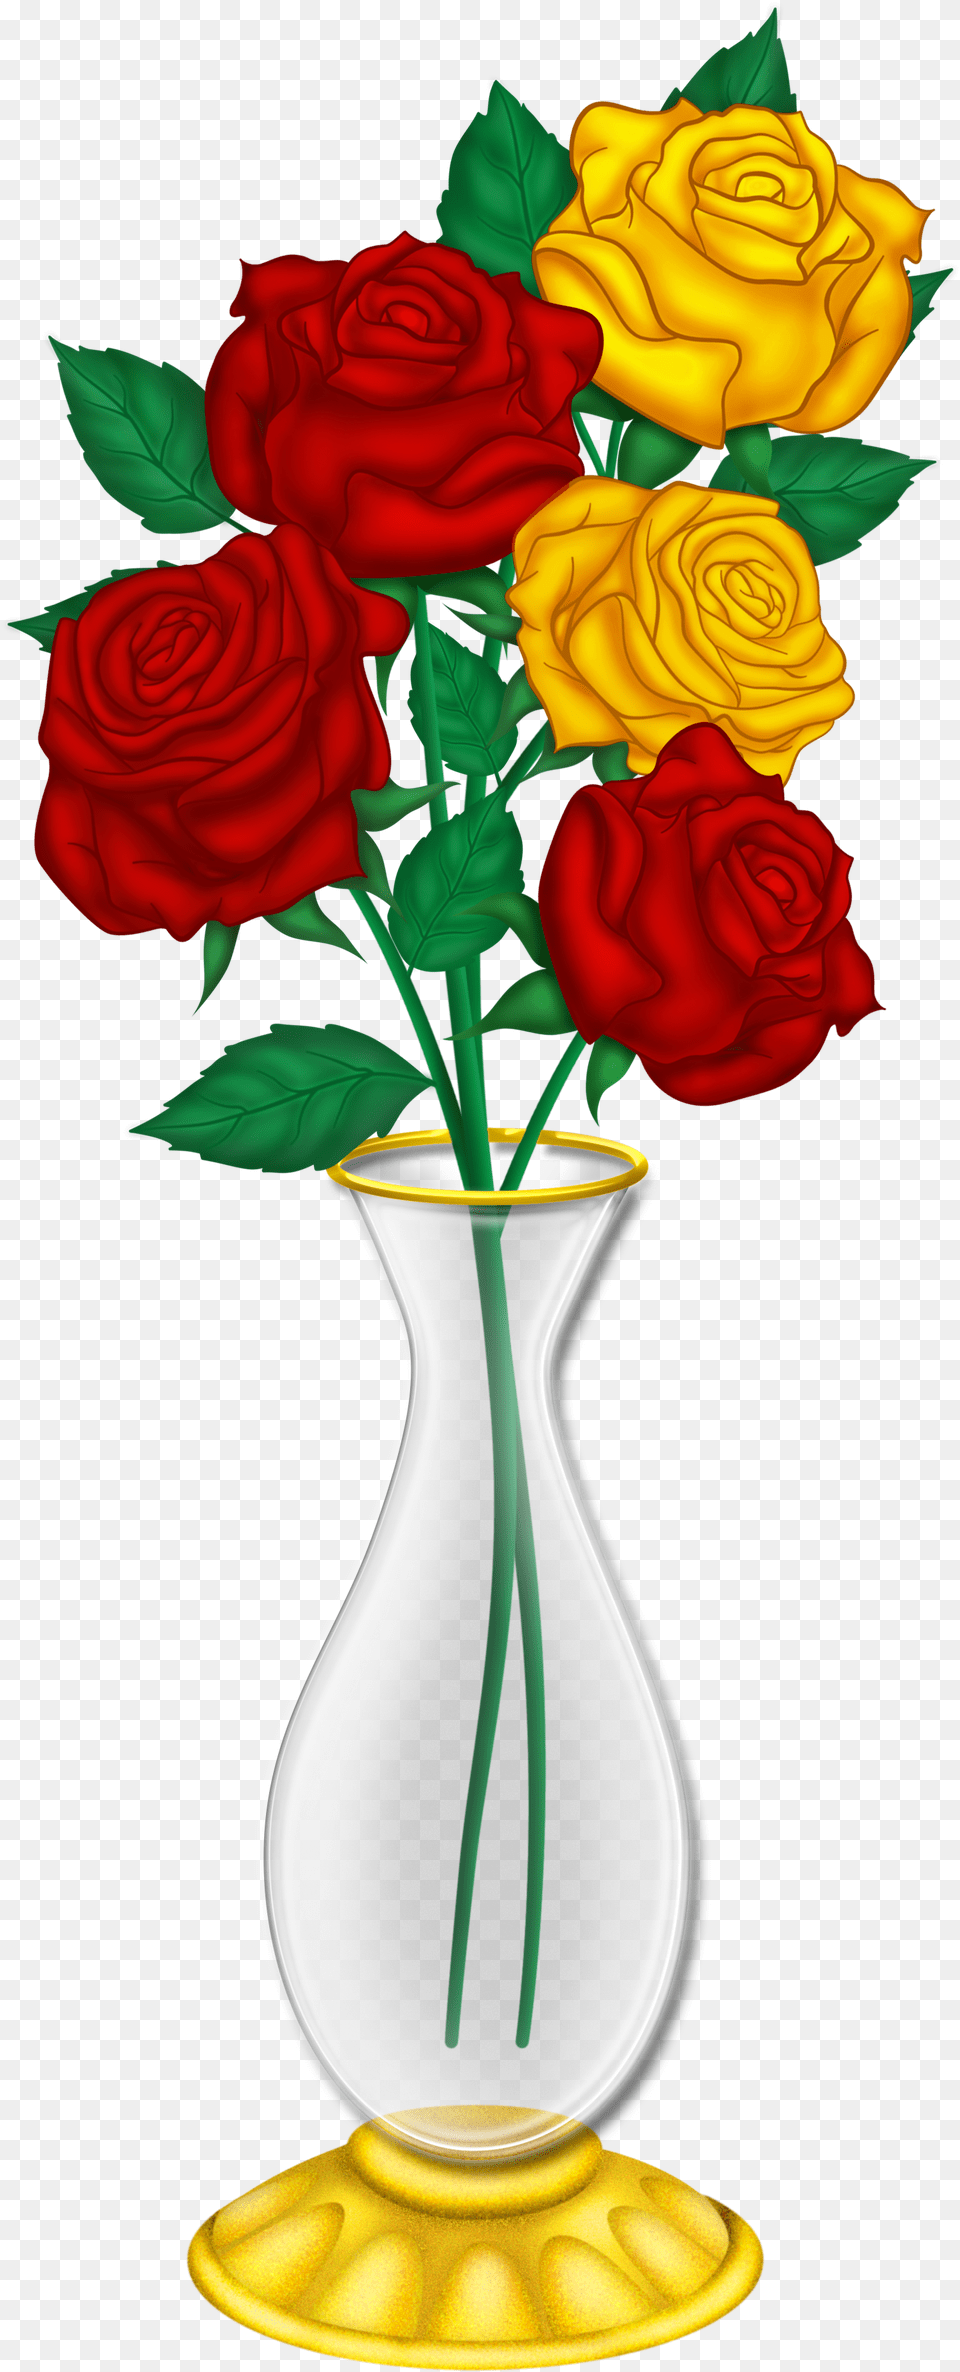 Flowers In Vase Rose Flower Vase Drawing, Jar, Plant, Pottery, Flower Arrangement Free Transparent Png